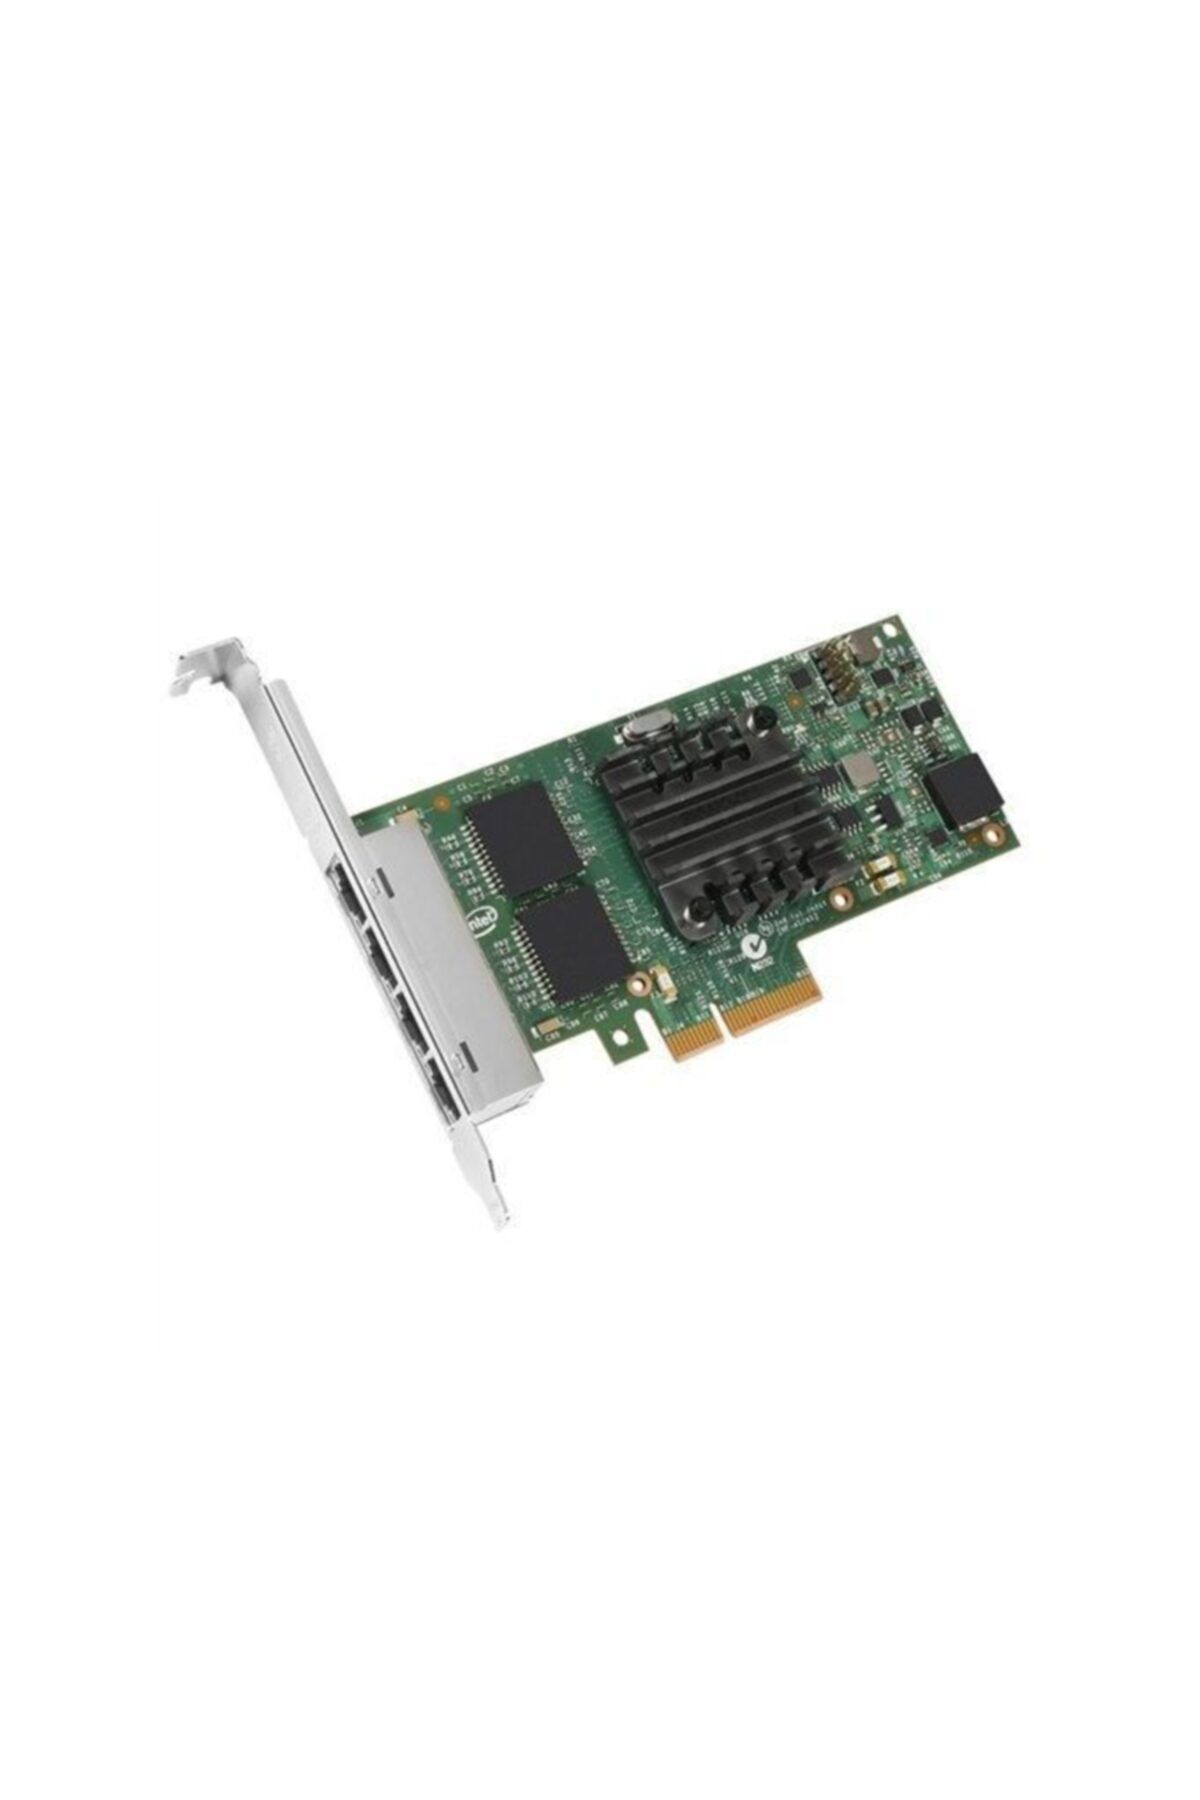 Intel I350-t4 V2 Quad / 4 Port Gigabit Ethernet Kart - I350t4v2blk